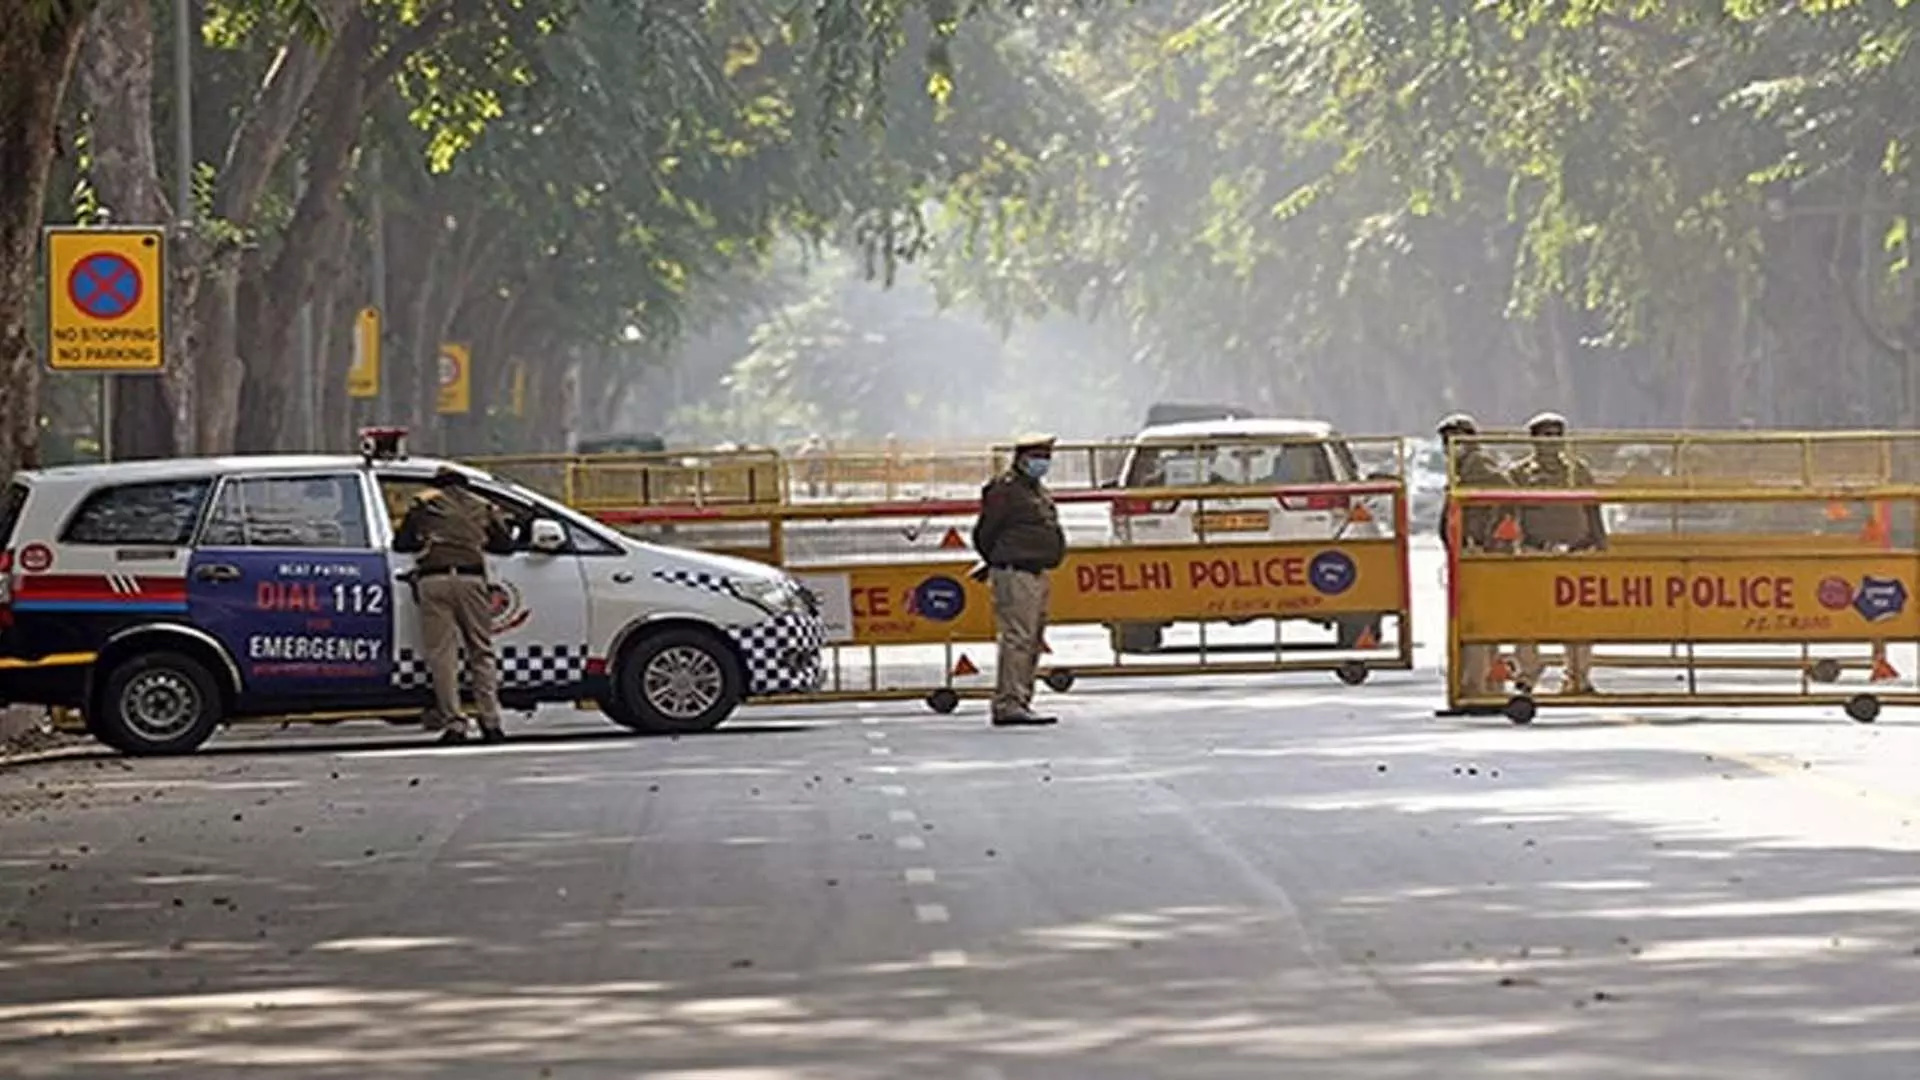 वास्तविक जीवन के ठग बंटी-बबली को दिल्ली के जनक पुरी में कार चोरी के बाद पुलिस ने गिरफ्तार किया